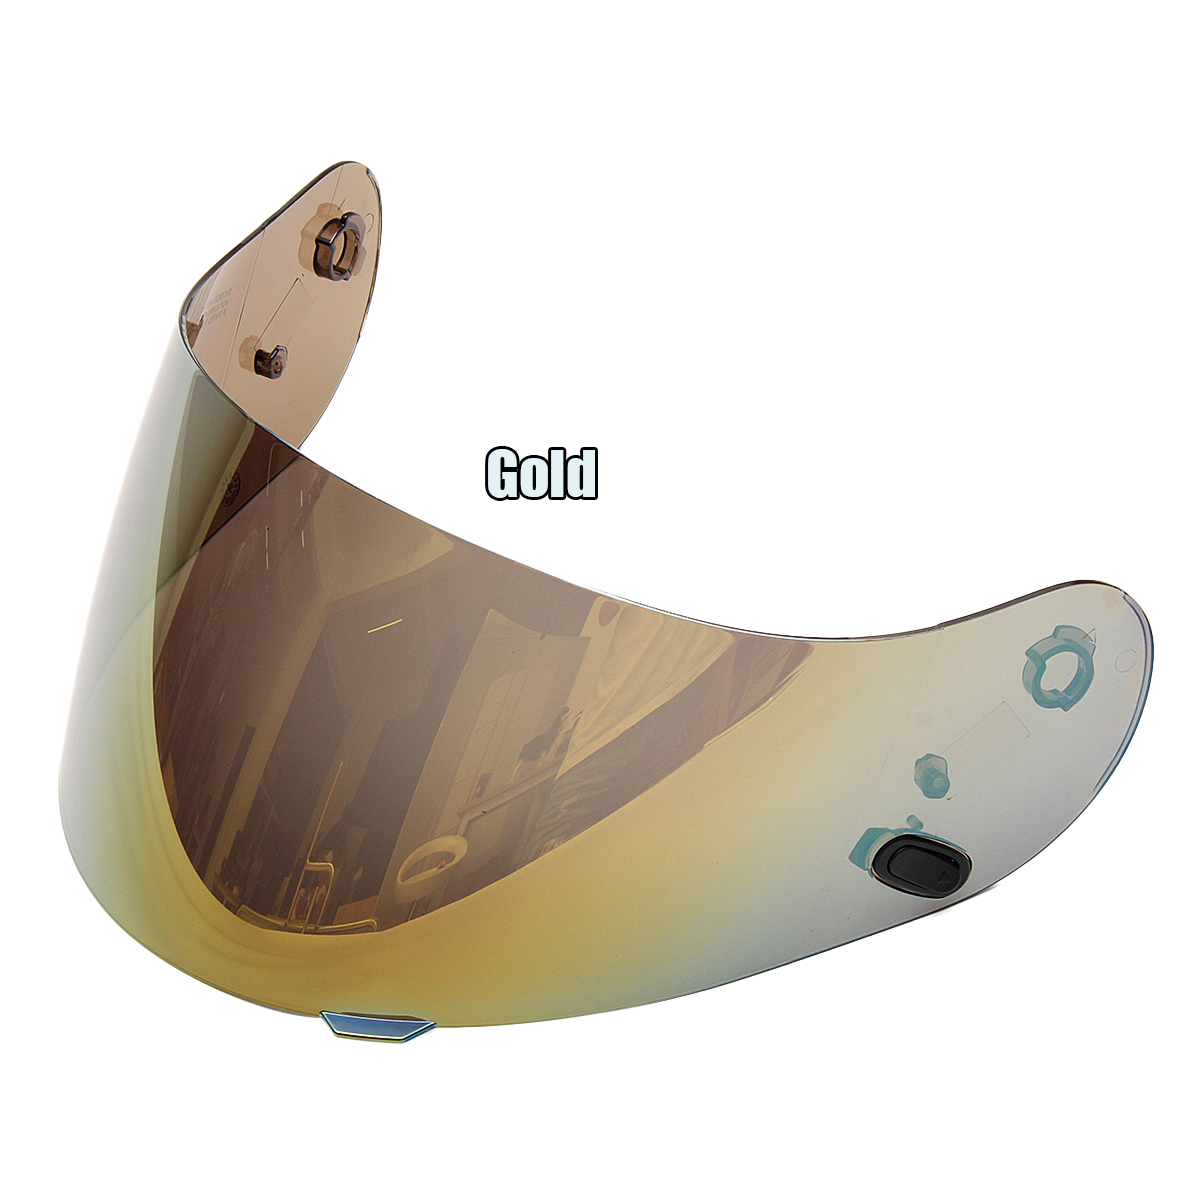 Motorcycle Helmet Lens Shield Visor For HJC CL-16 CL-17 CS-15 CS-R1 CS-R2 CS-15